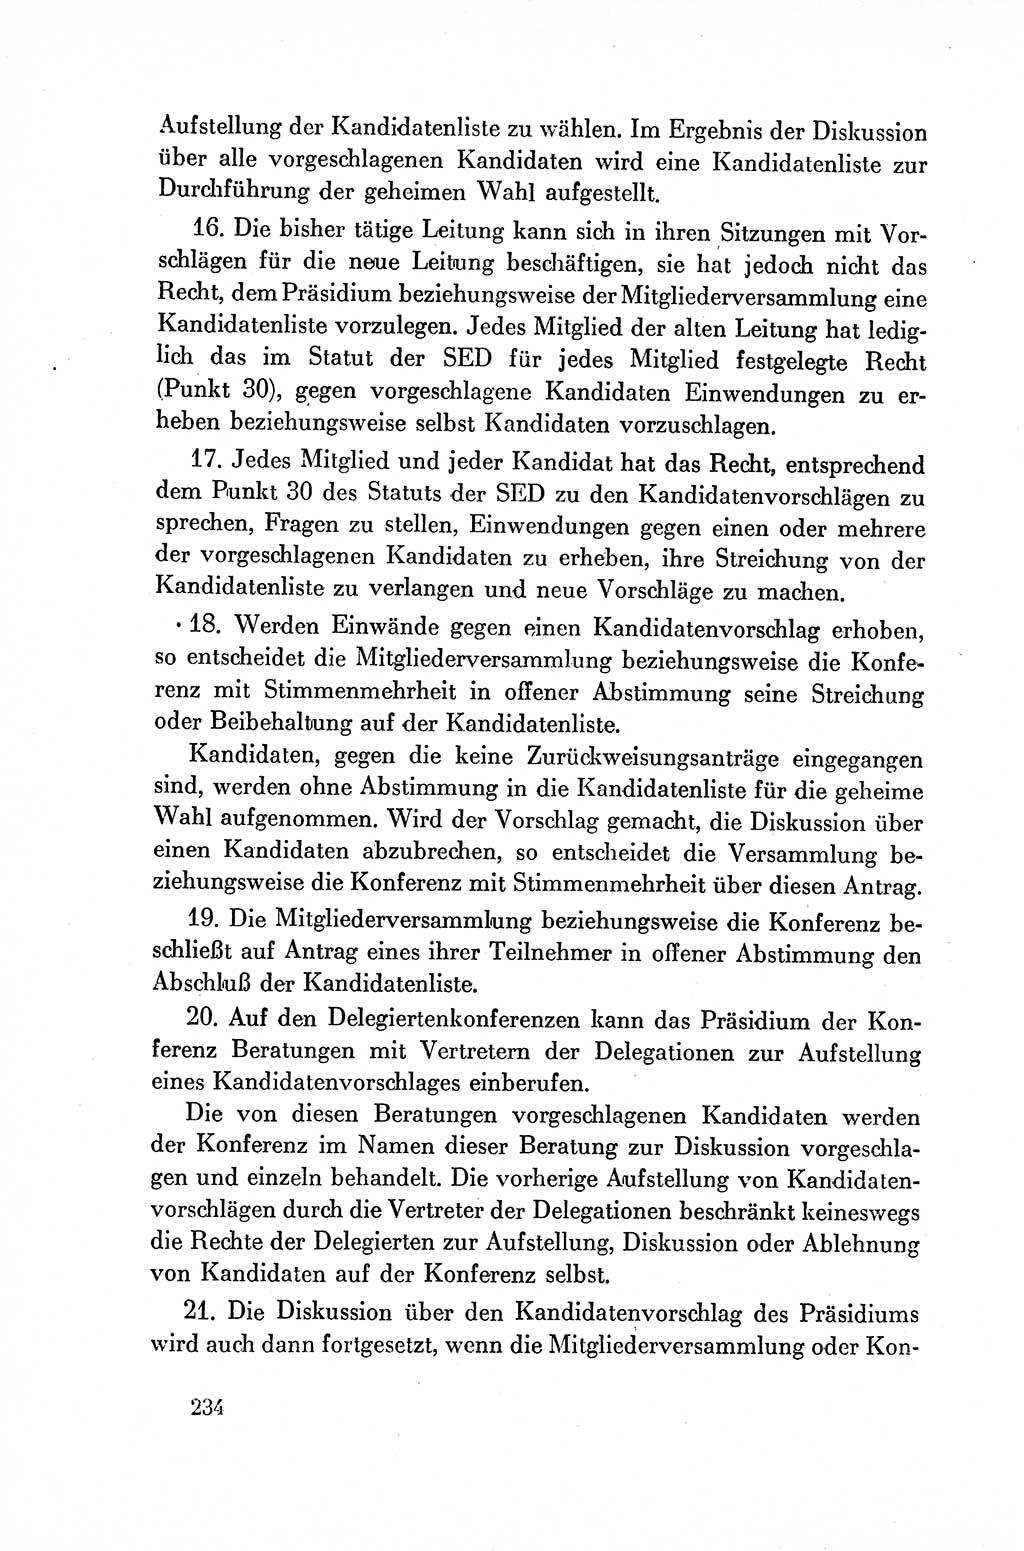 Dokumente der Sozialistischen Einheitspartei Deutschlands (SED) [Deutsche Demokratische Republik (DDR)] 1954-1955, Seite 234 (Dok. SED DDR 1954-1955, S. 234)